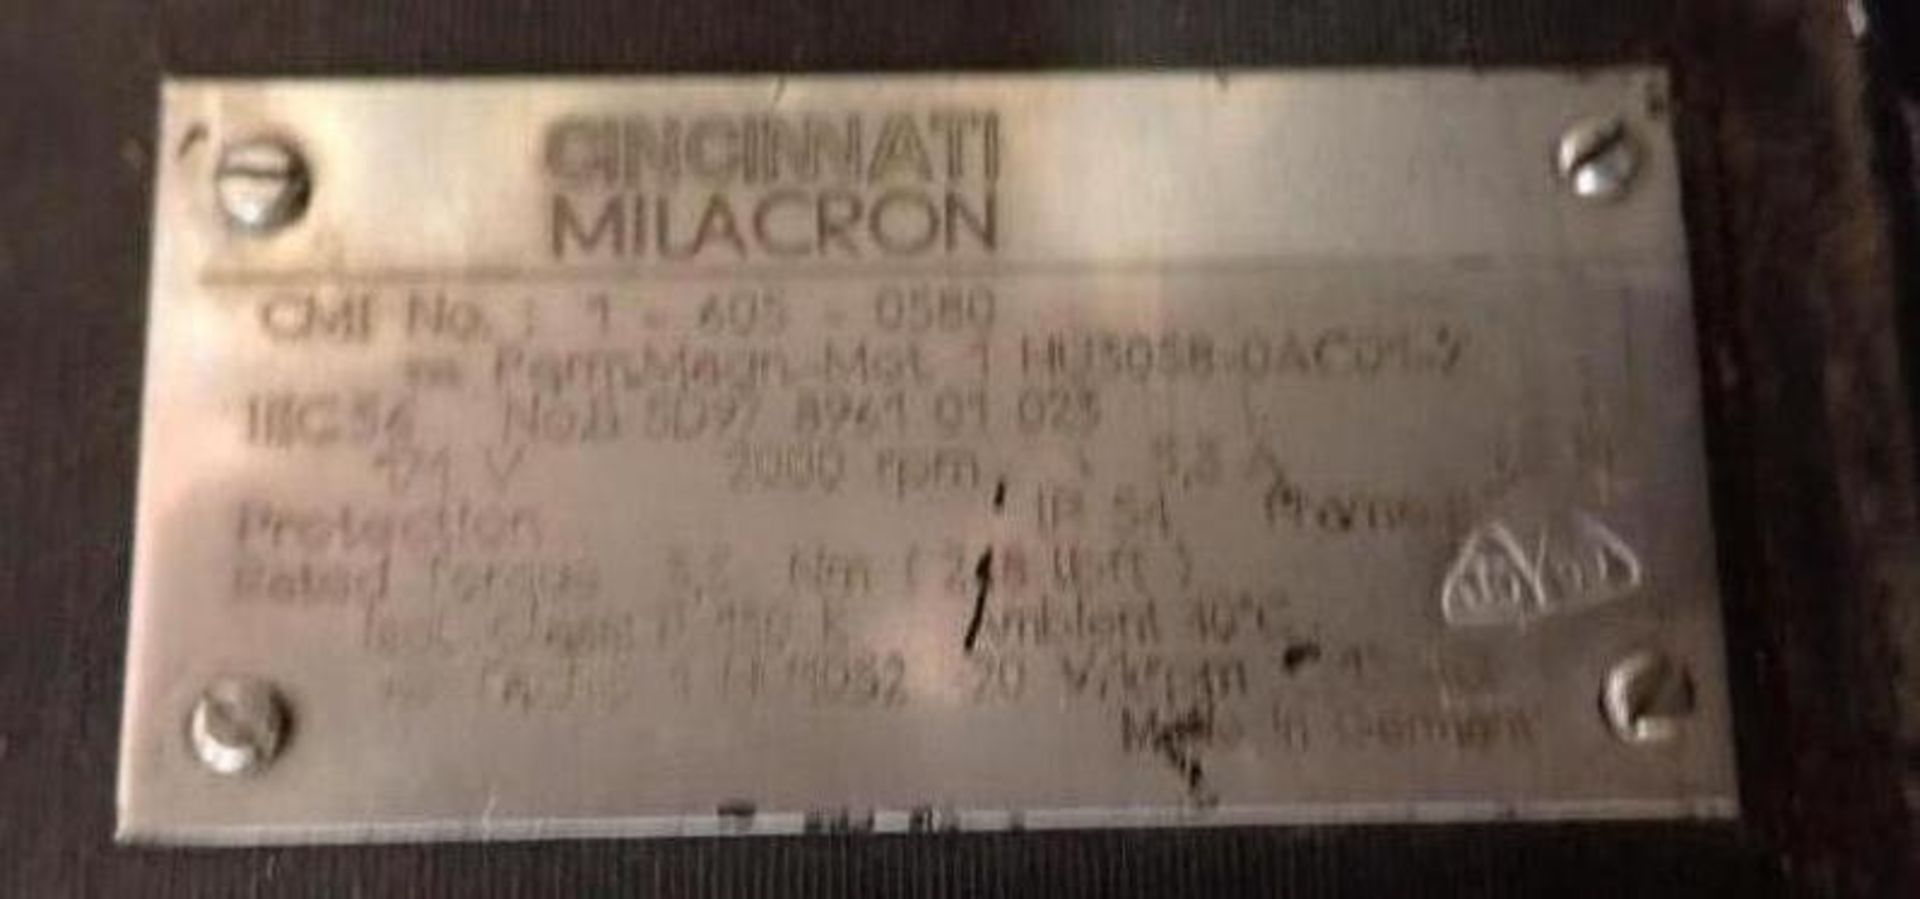 Lot of (2) Cincinnati Milacron #1 HU3058-0AC01-Z Servo Motors - Image 5 of 5